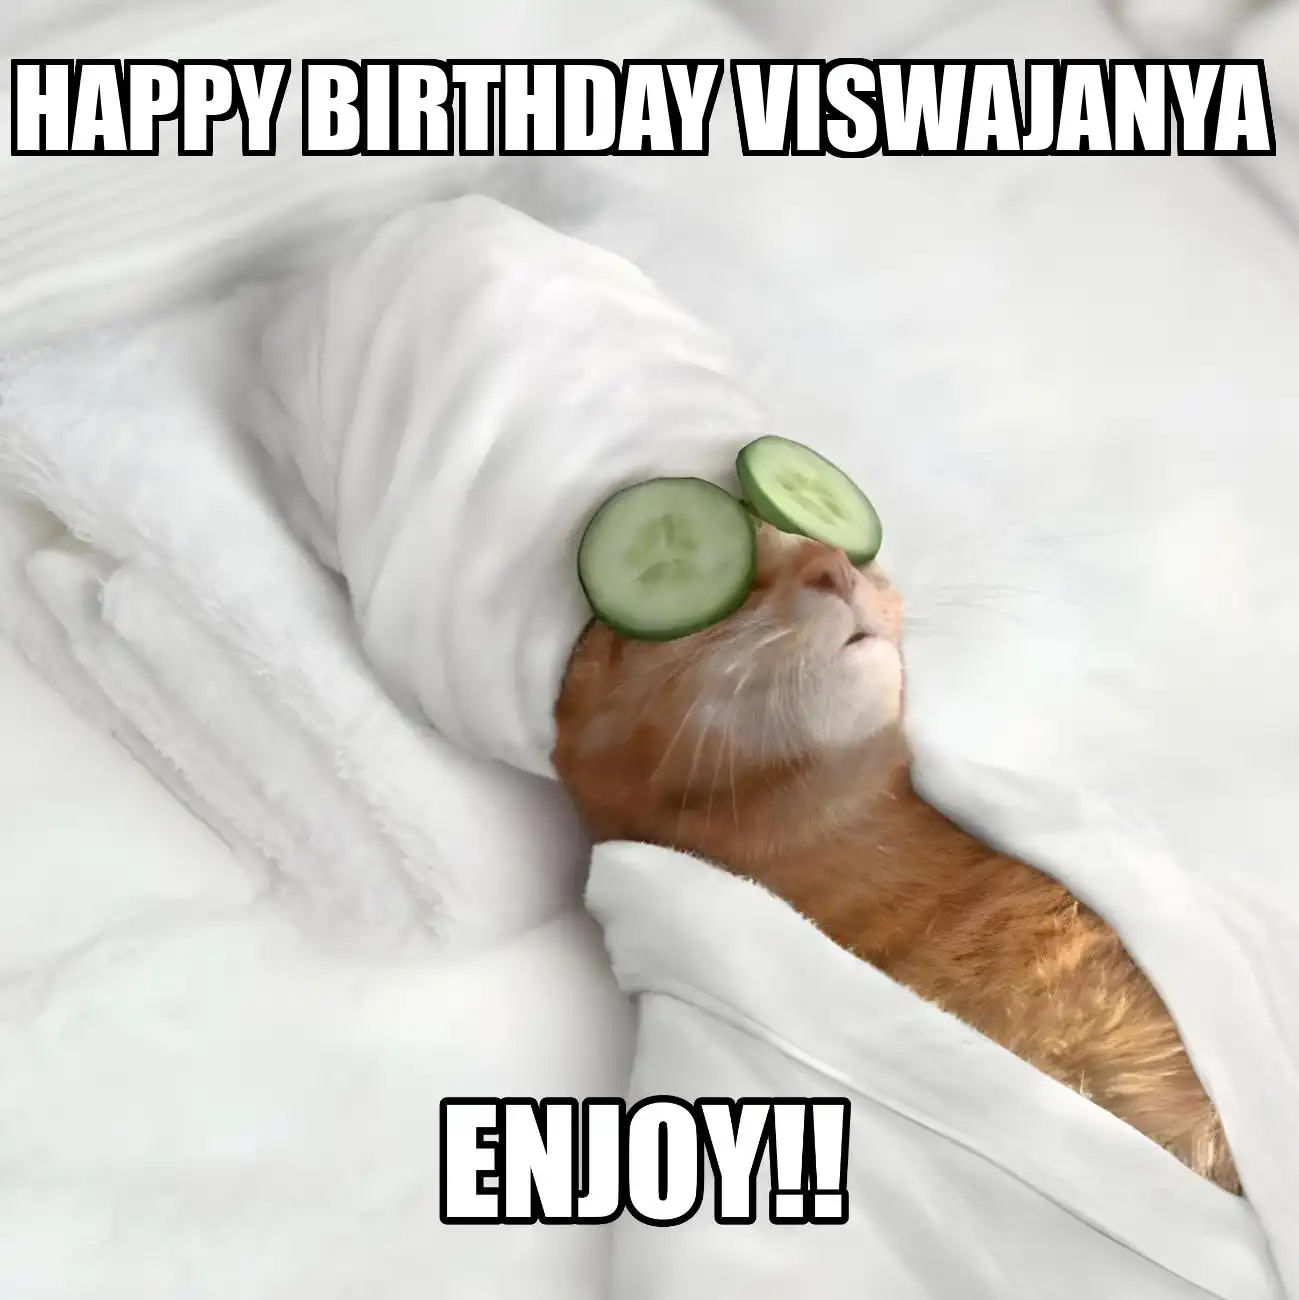 Happy Birthday Viswajanya Enjoy Cat Meme